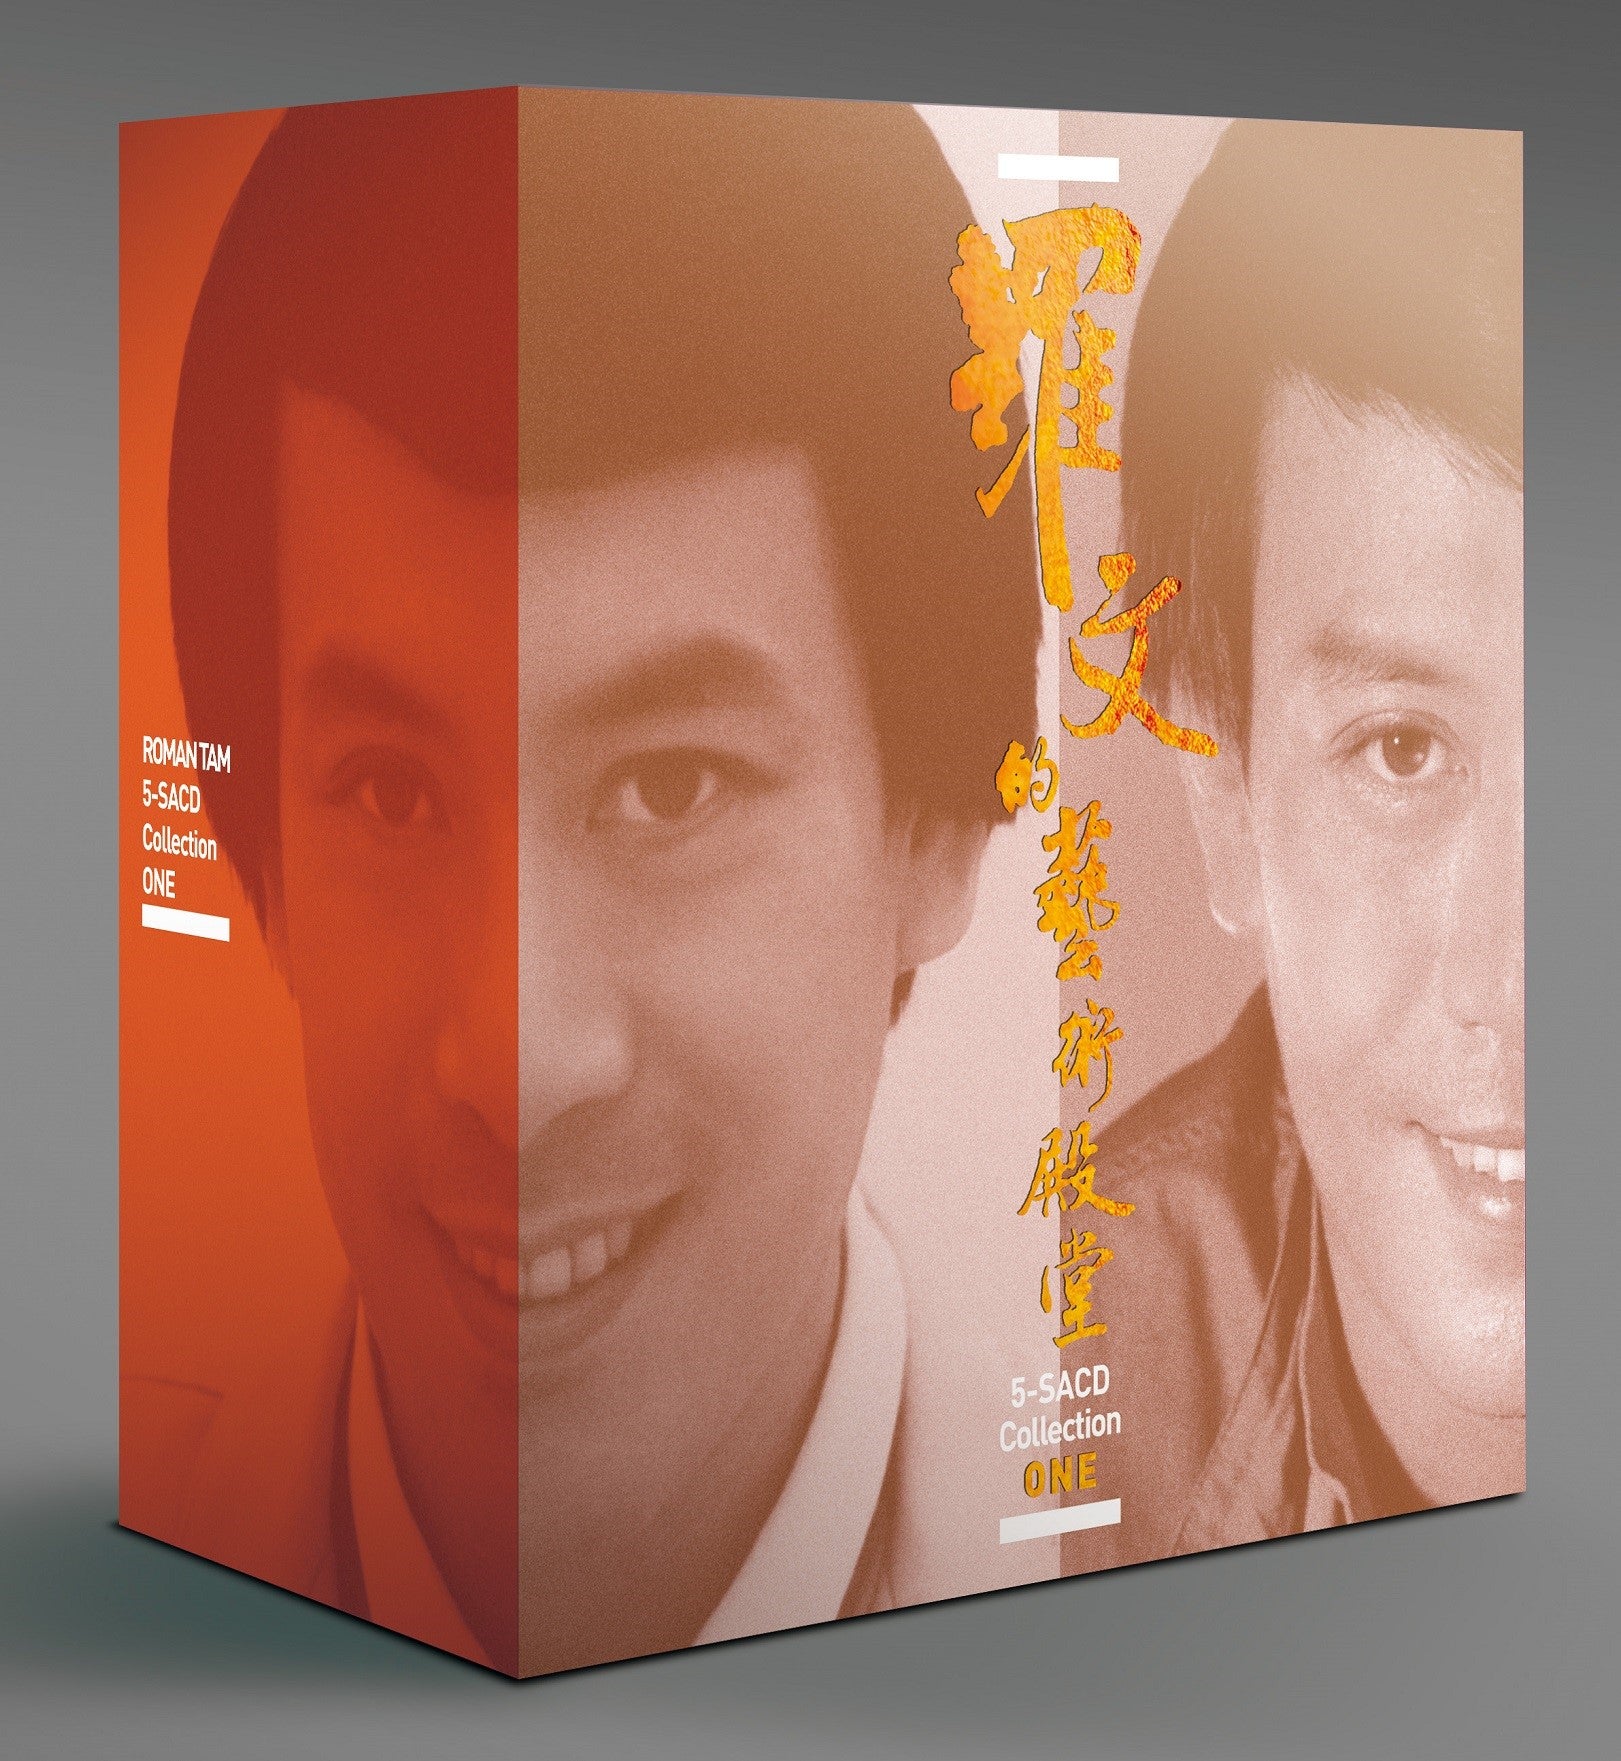 羅文的藝術殿堂 Collection Box 1(5-SACD)-羅文 Roman Tam